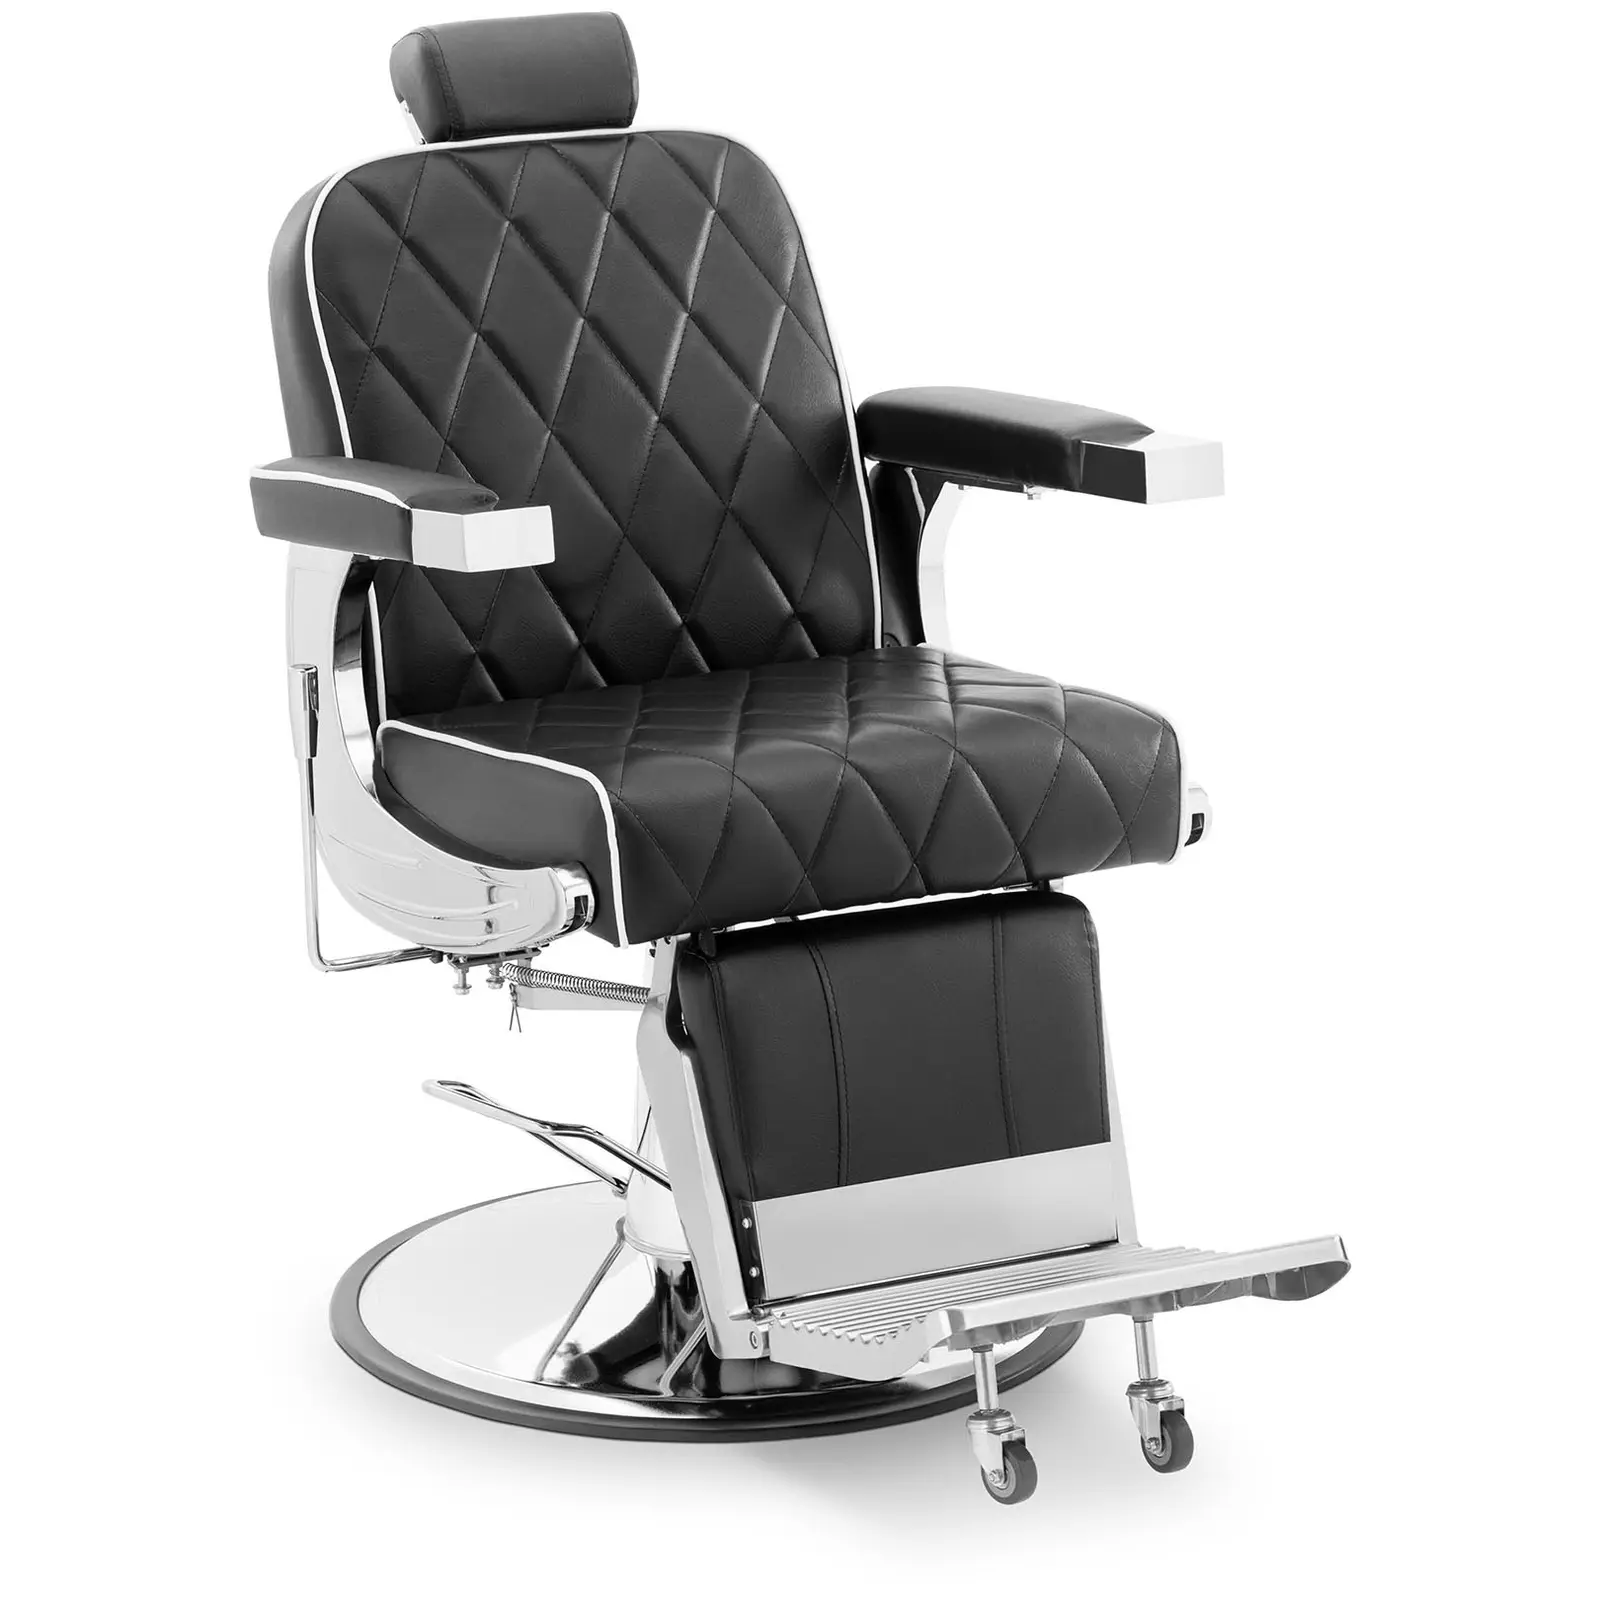 Grožio salono kėdė - galvos ir kojų atrama - kojų atrama - 58 - 71 cm - 150 kg - pakreipiama - juoda